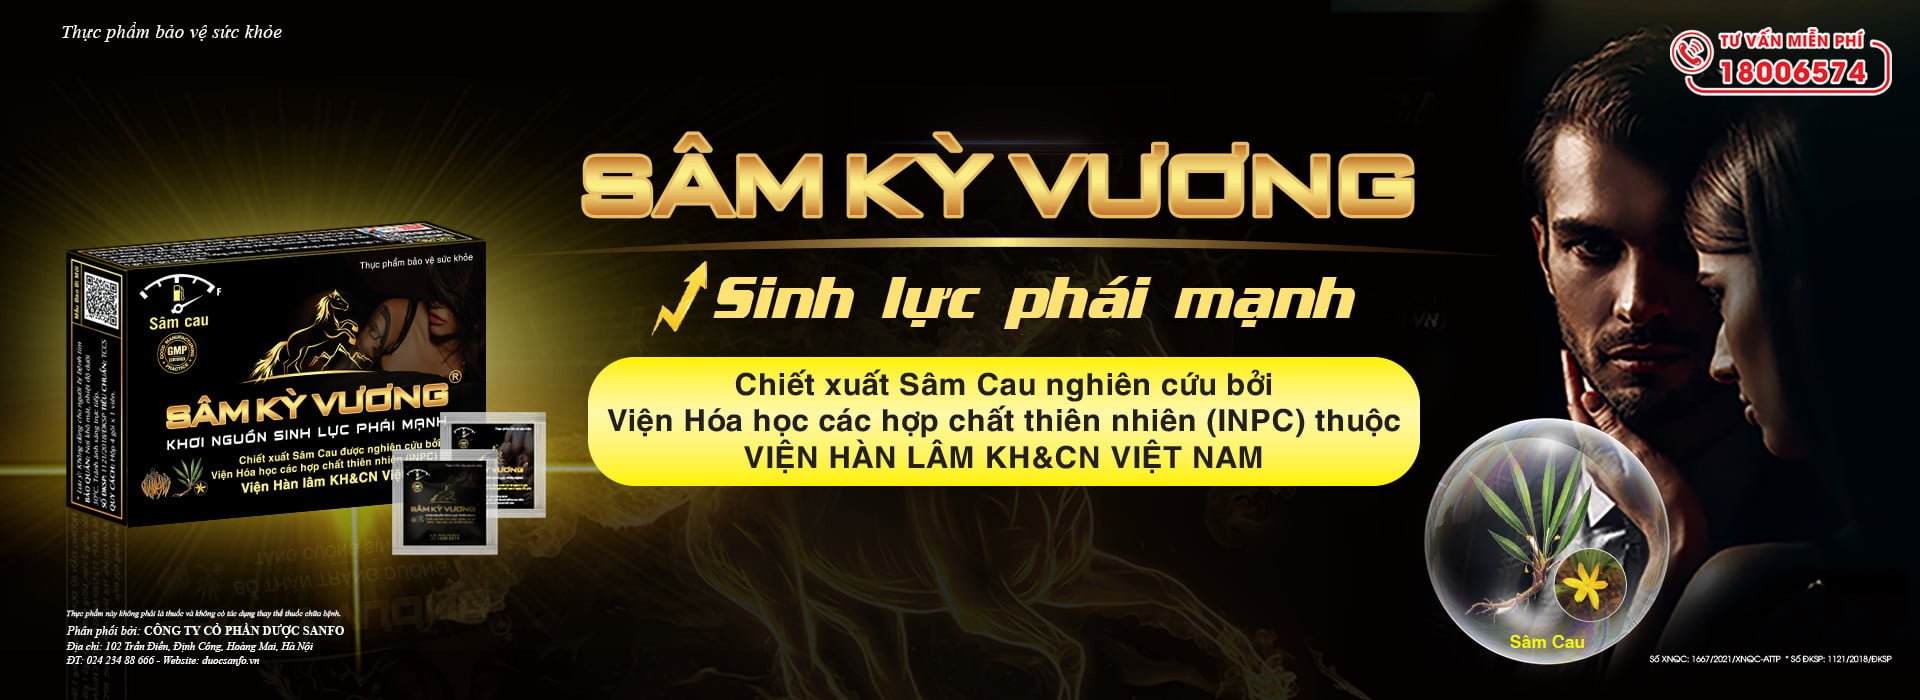 KSCC. Nguyễn Văn Hoan nói về Sâm Kỳ Vương